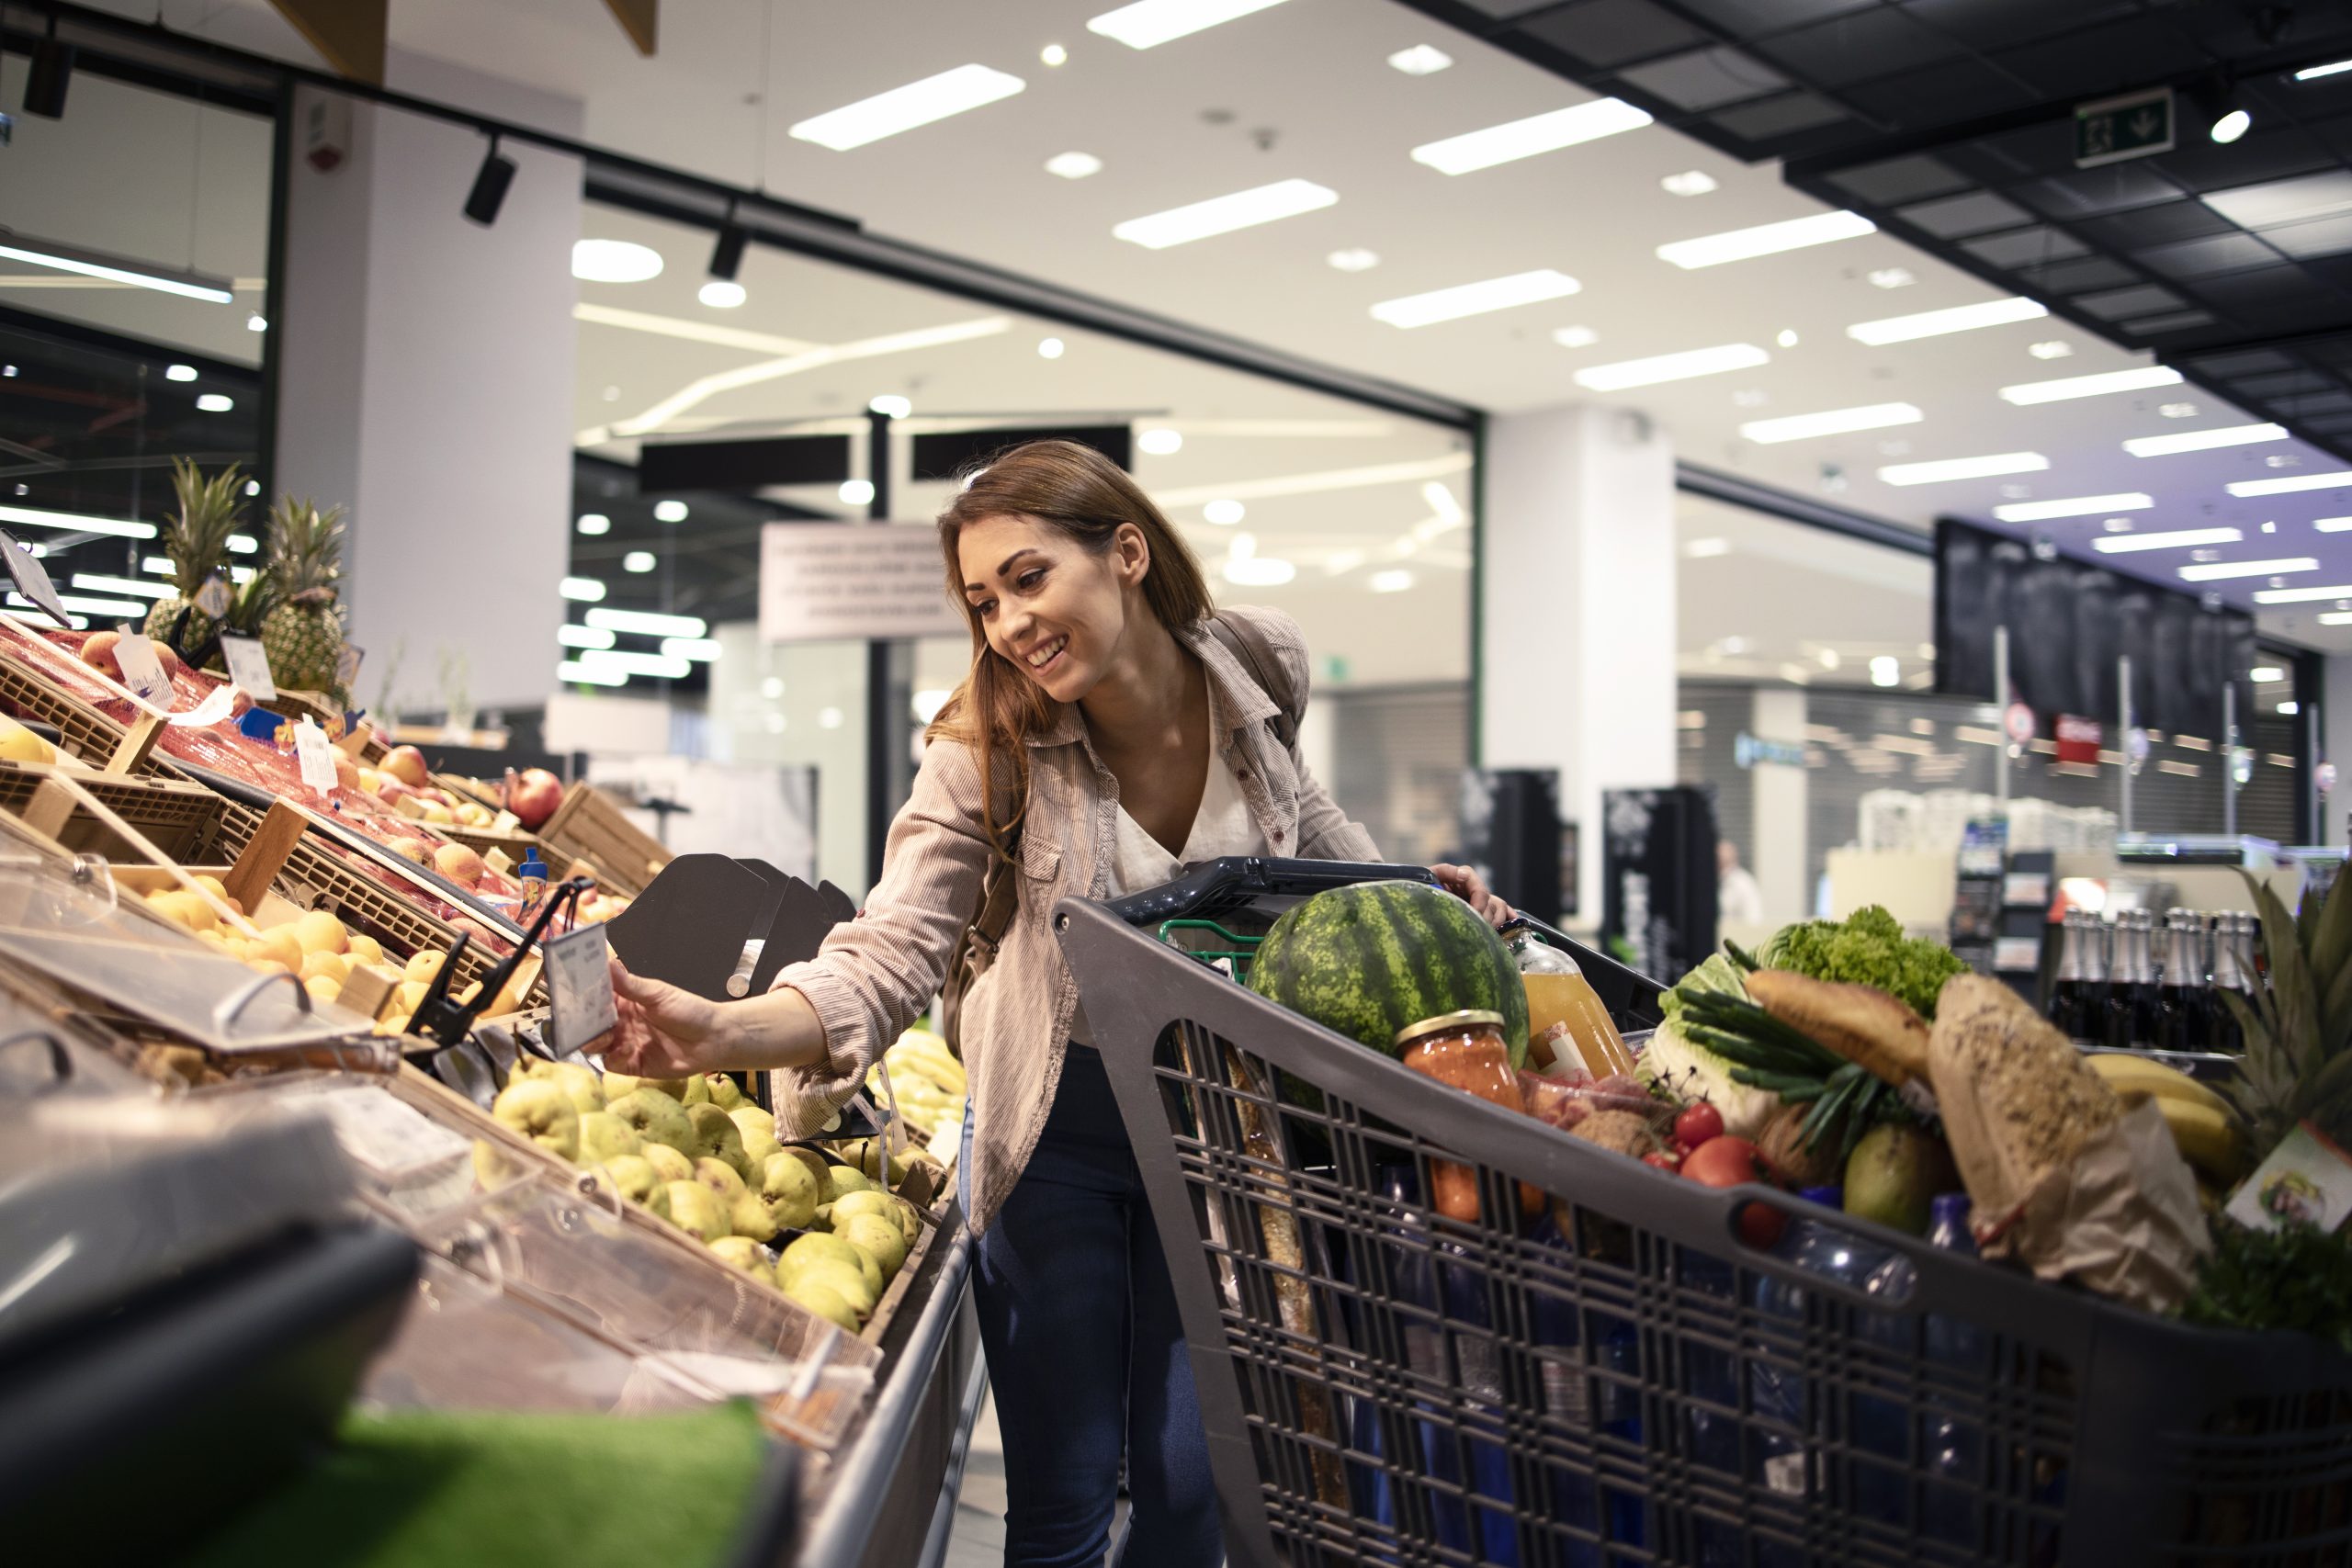 Програма лояльності для супермаркету: що потрібно знати